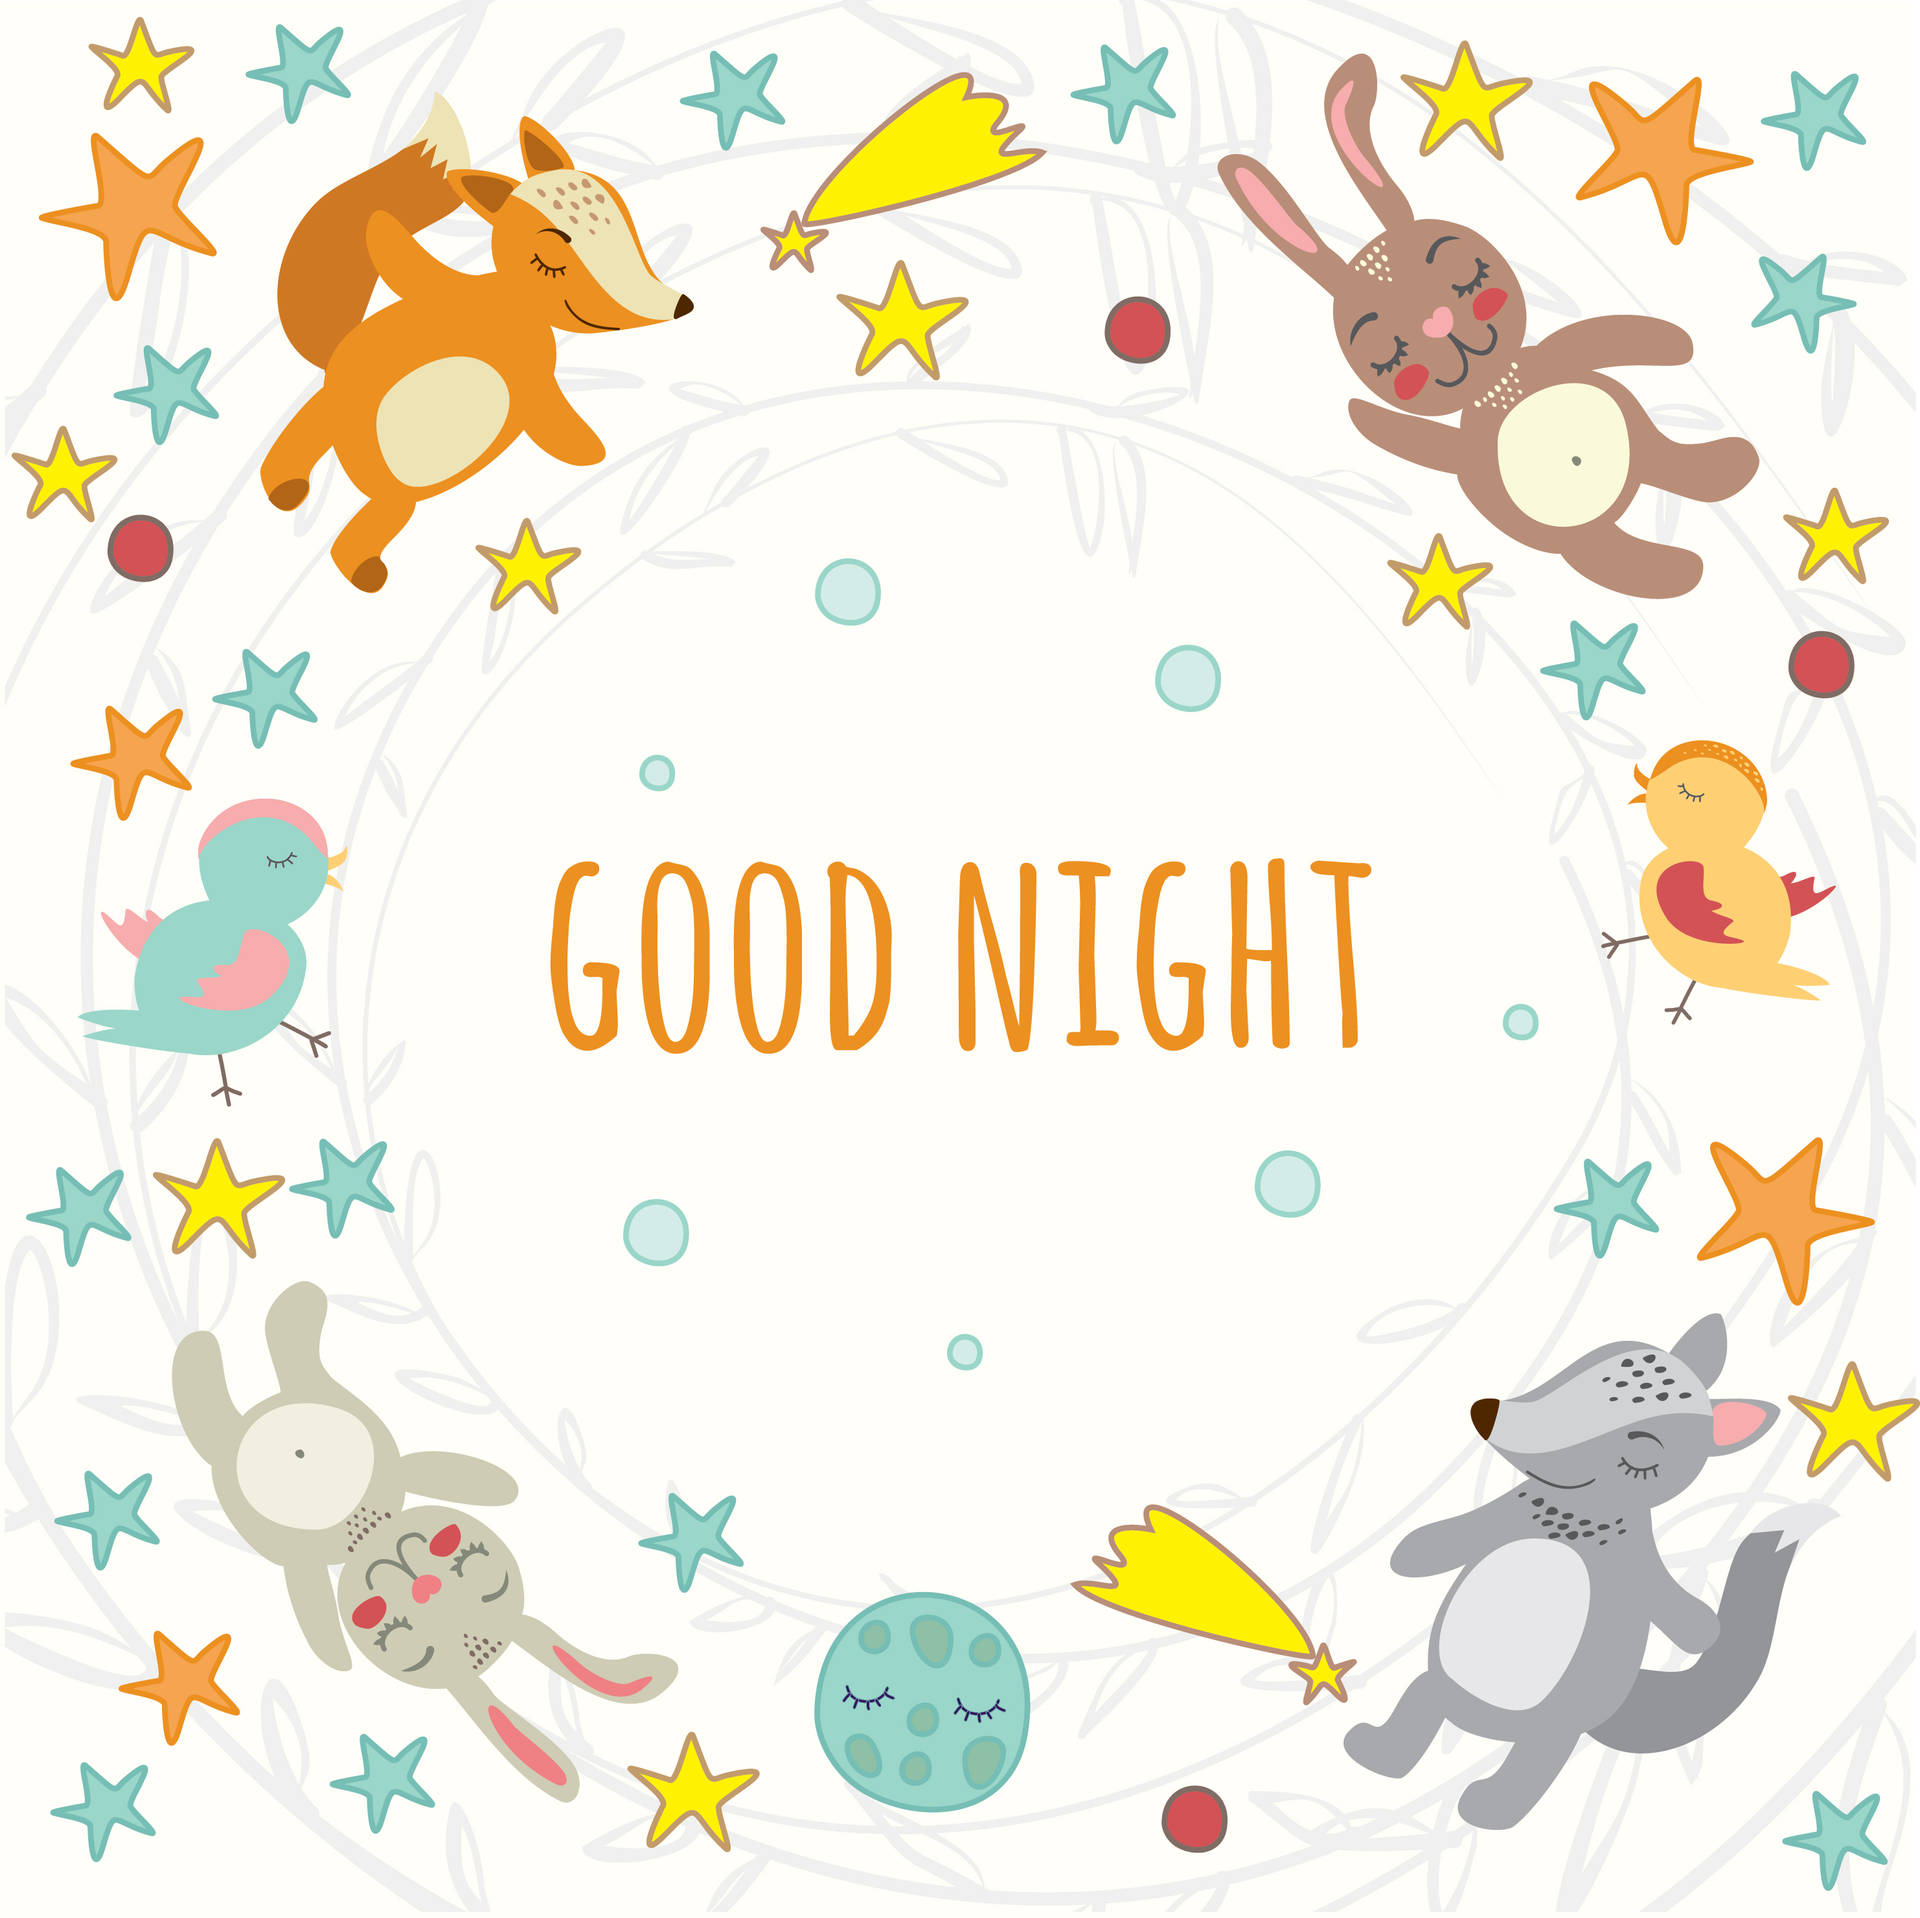 Good Night Animals